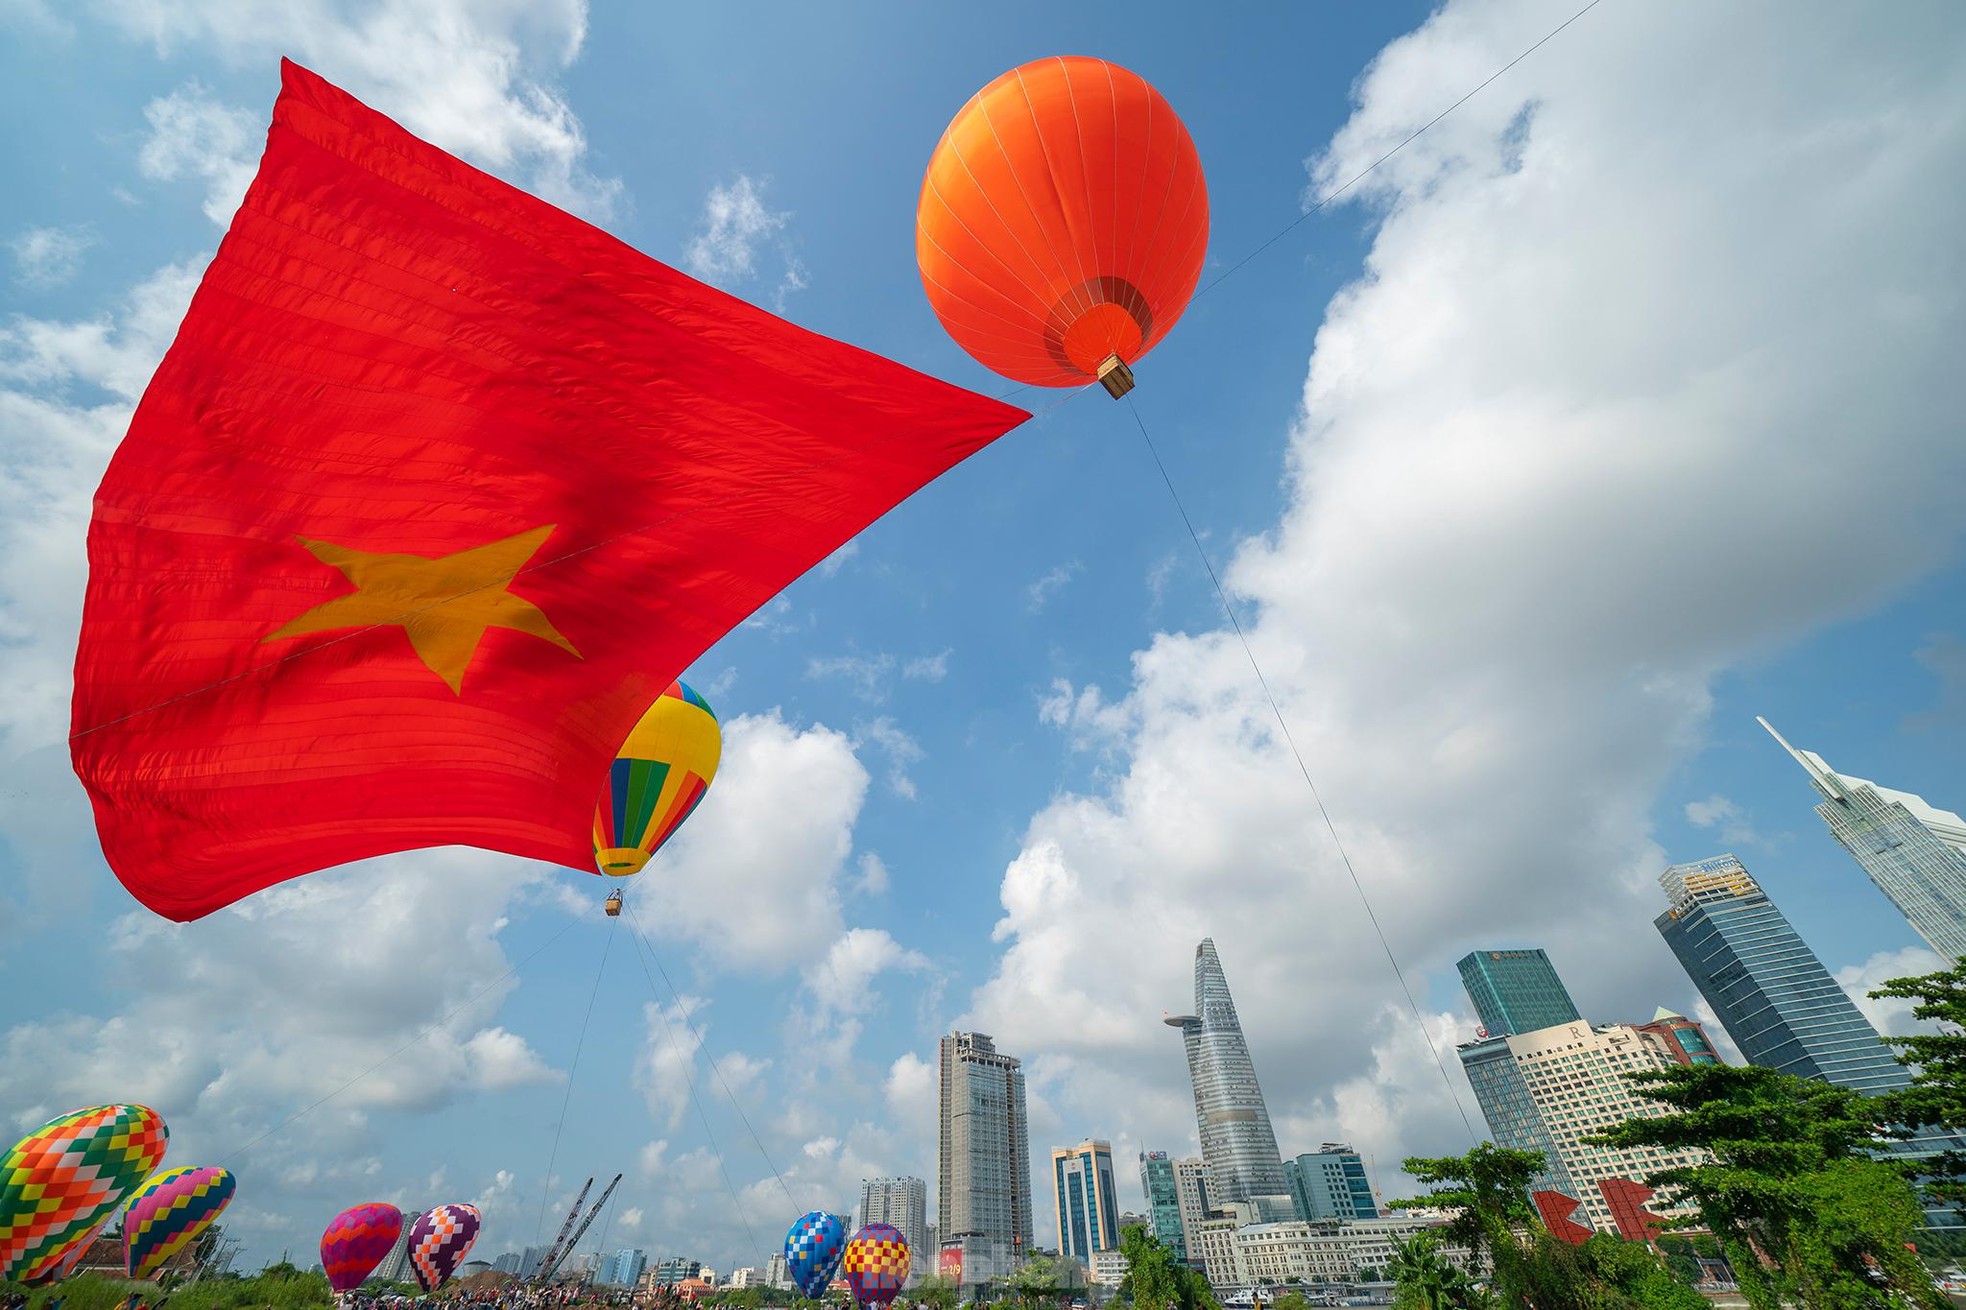 Cận cảnh khinh khí cầu kéo Quốc kỳ rộng 1800m2 mừng Quốc khánh 2/9 - Ảnh 19.